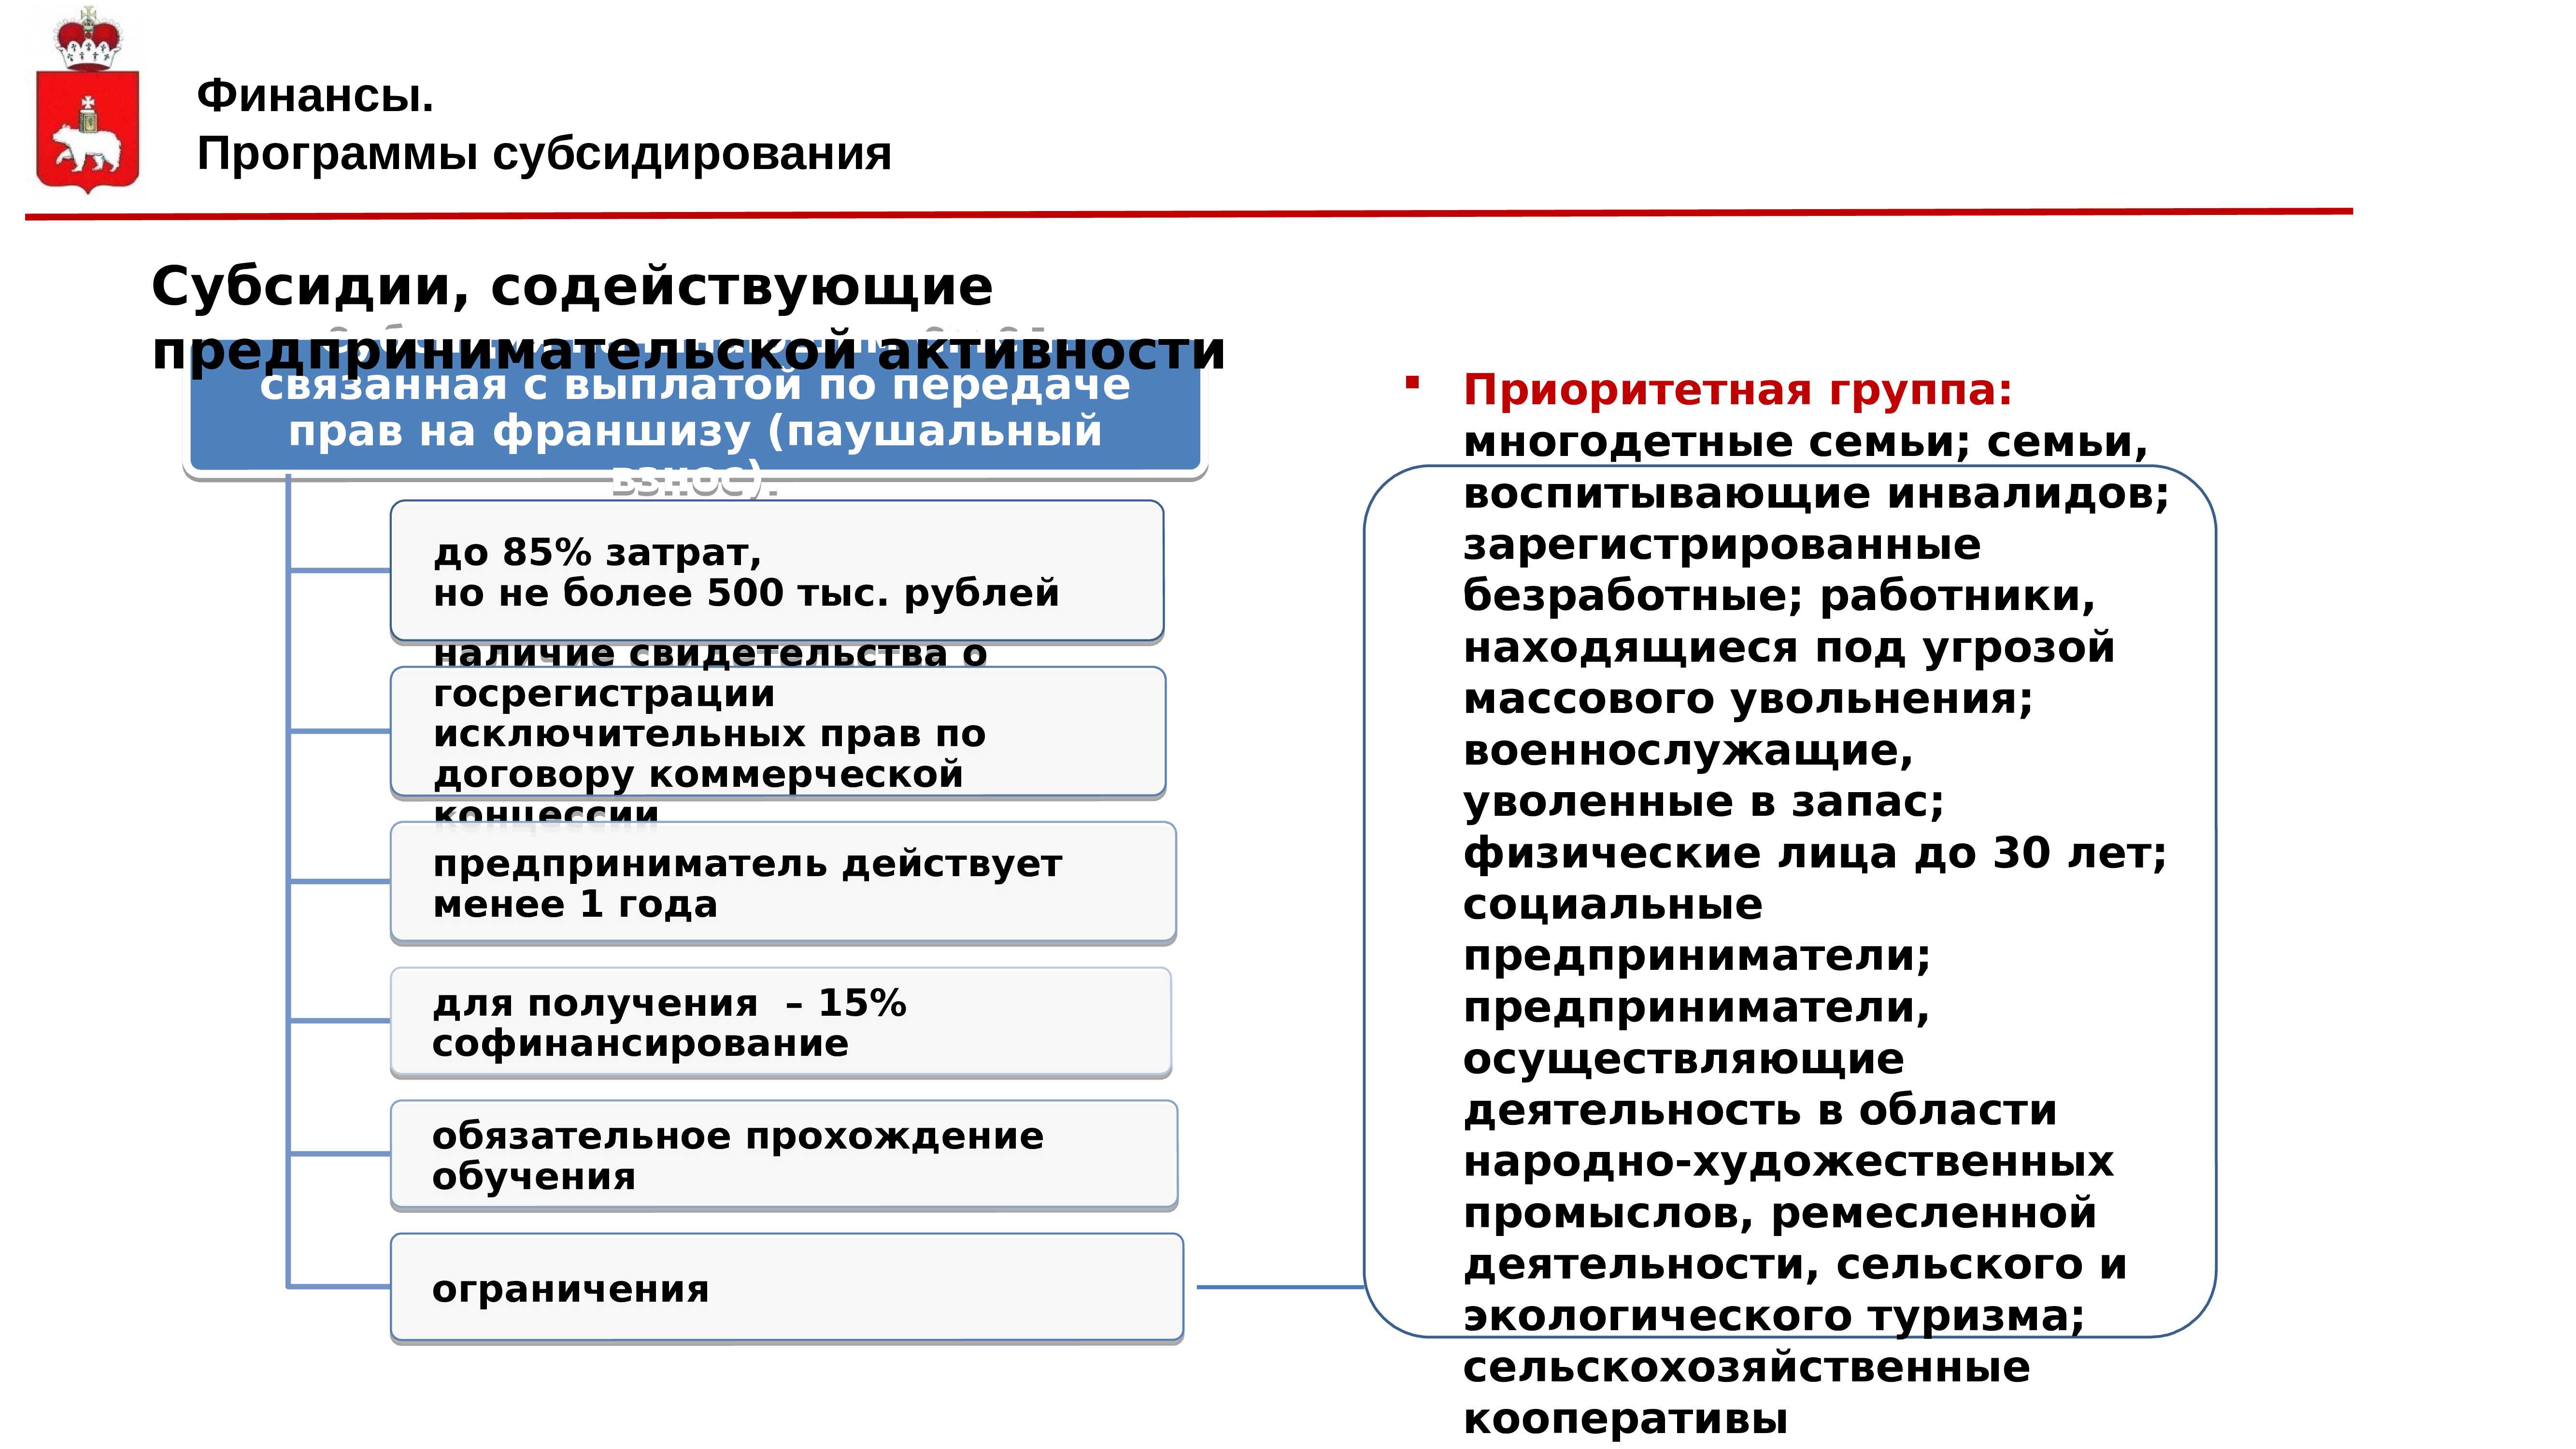 Как выживает малый и средний бизнес в новых экономических реалиях? | банки.ру